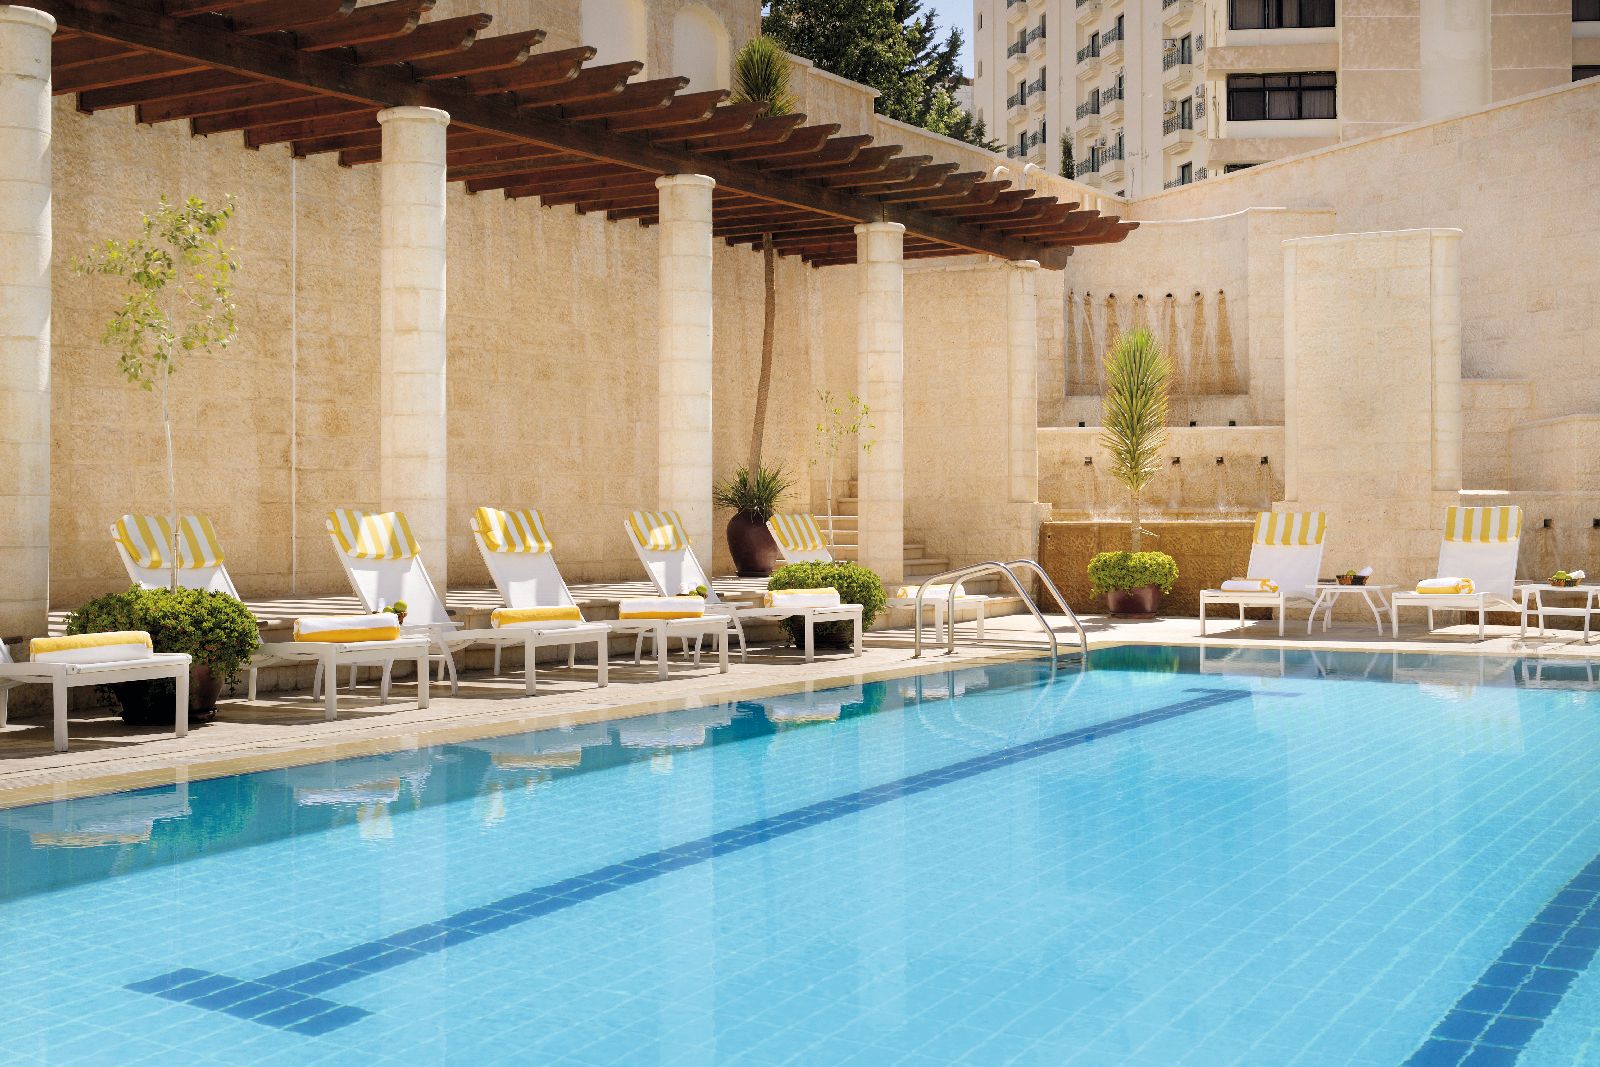 Outdoor swimming pool at the Movenpick Resort Petra in Jordan